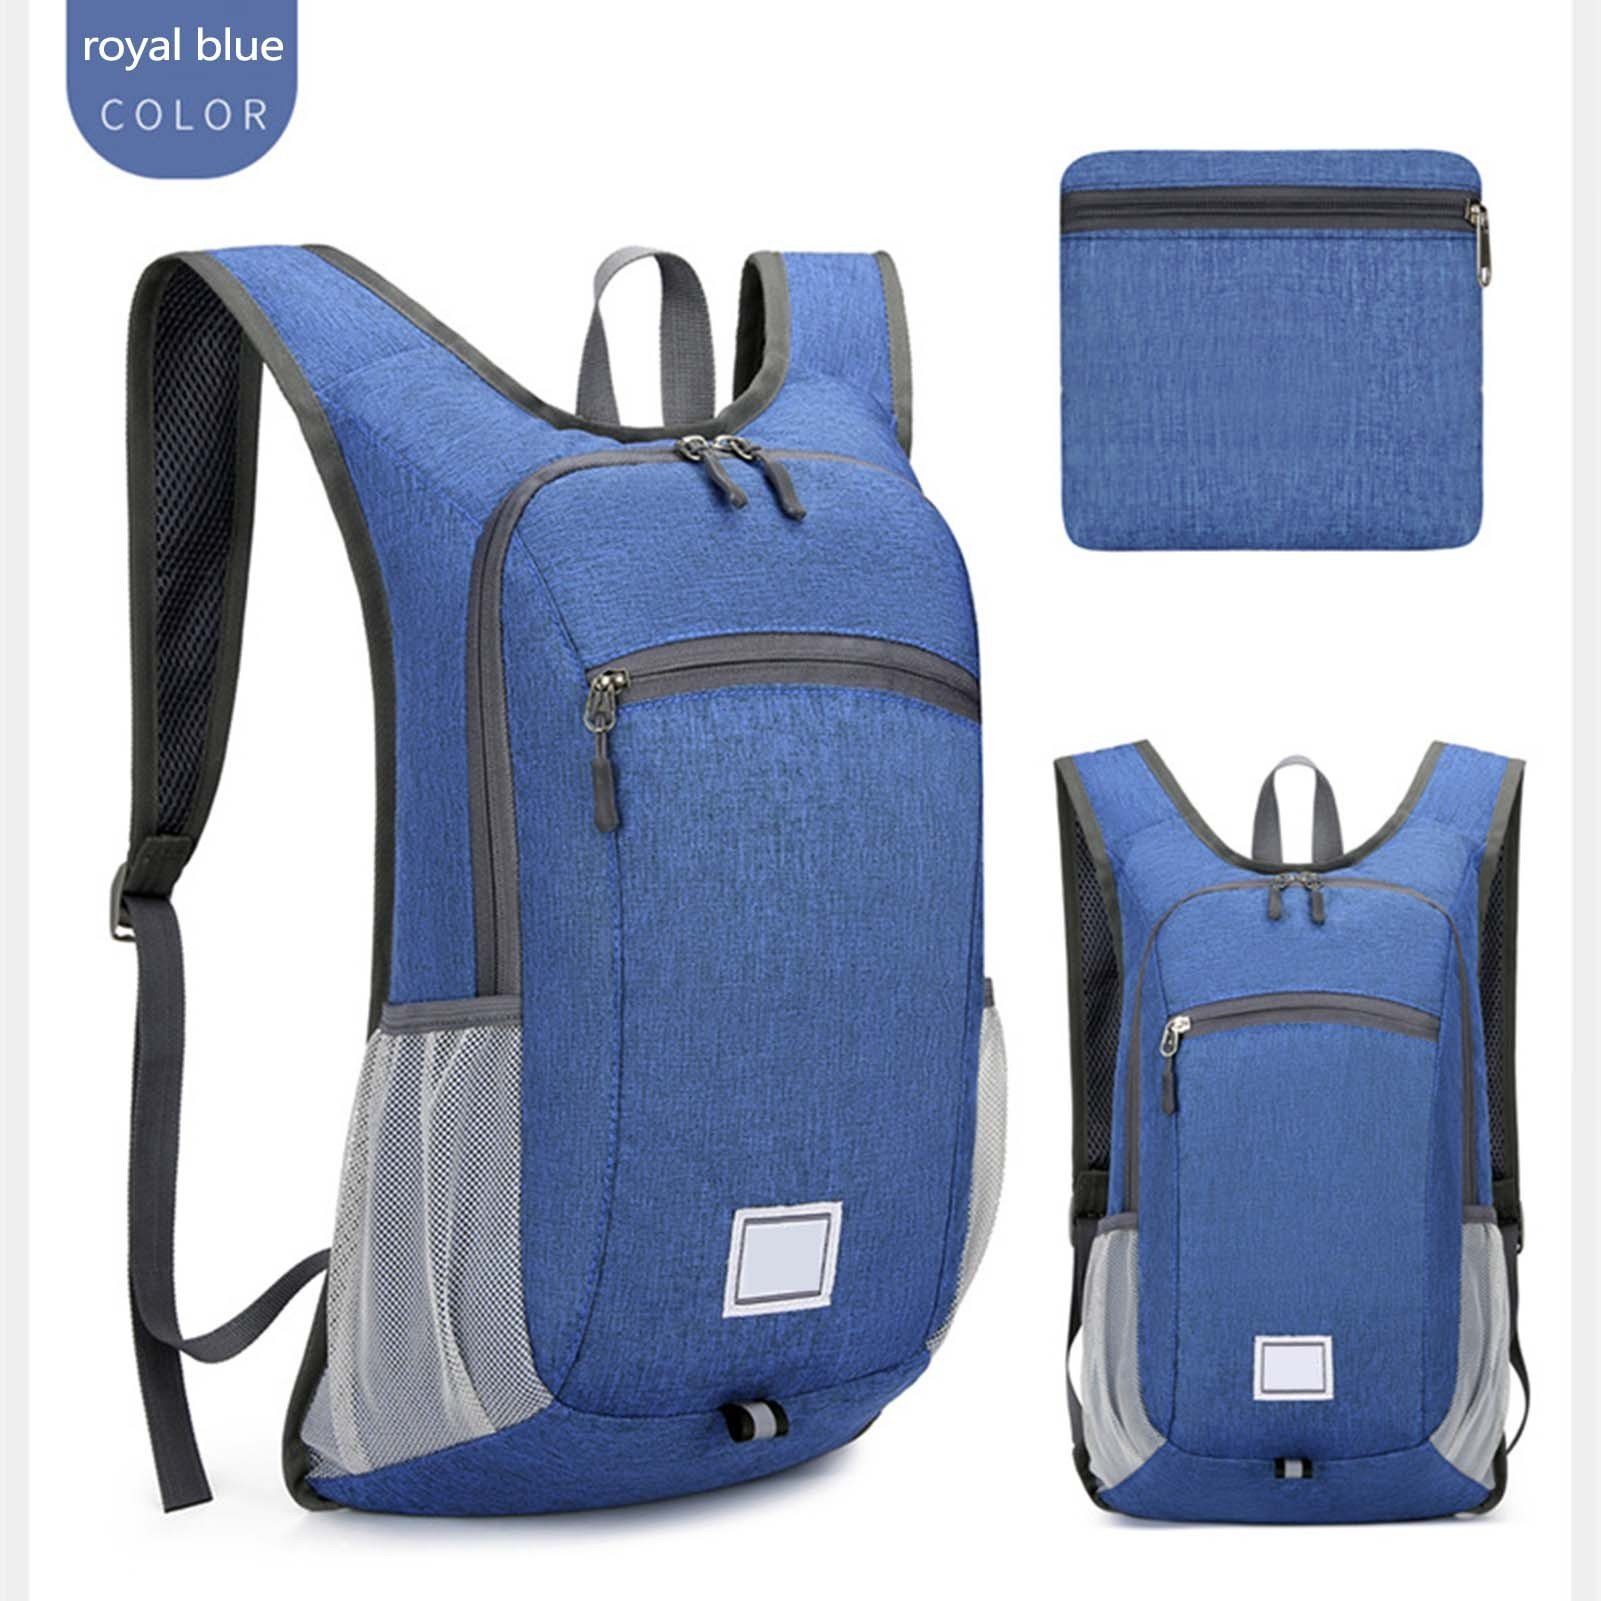 Großer Tragbare Reisetasche Mit Blusmart sapphire Rucksack Unisex blue Outdoor-Reiserucksack,